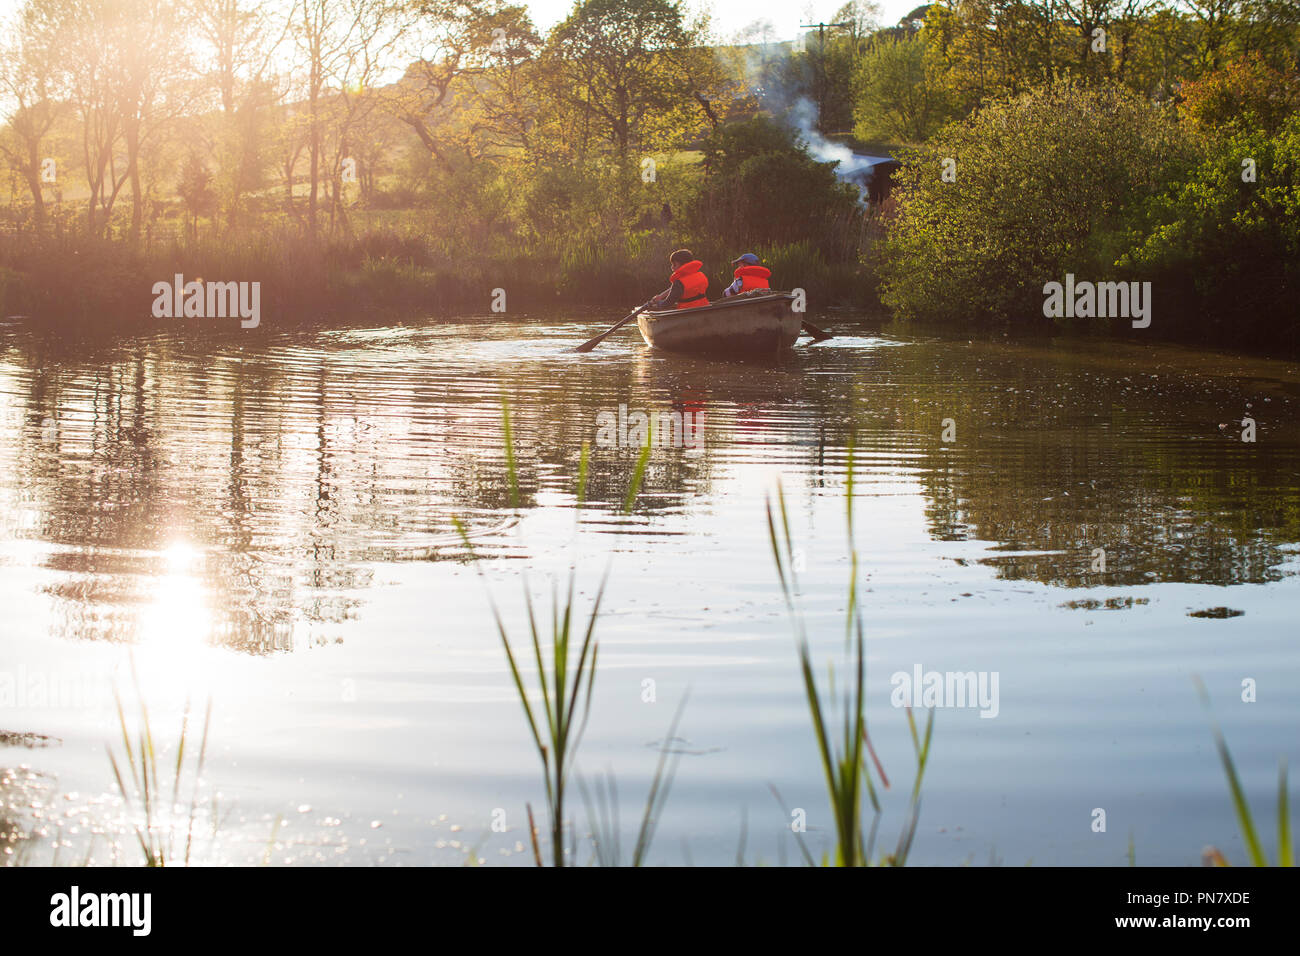 Dos niños remando un barco en un pequeño lago de vuelta iluminado por el sol de la noche. Foto de stock